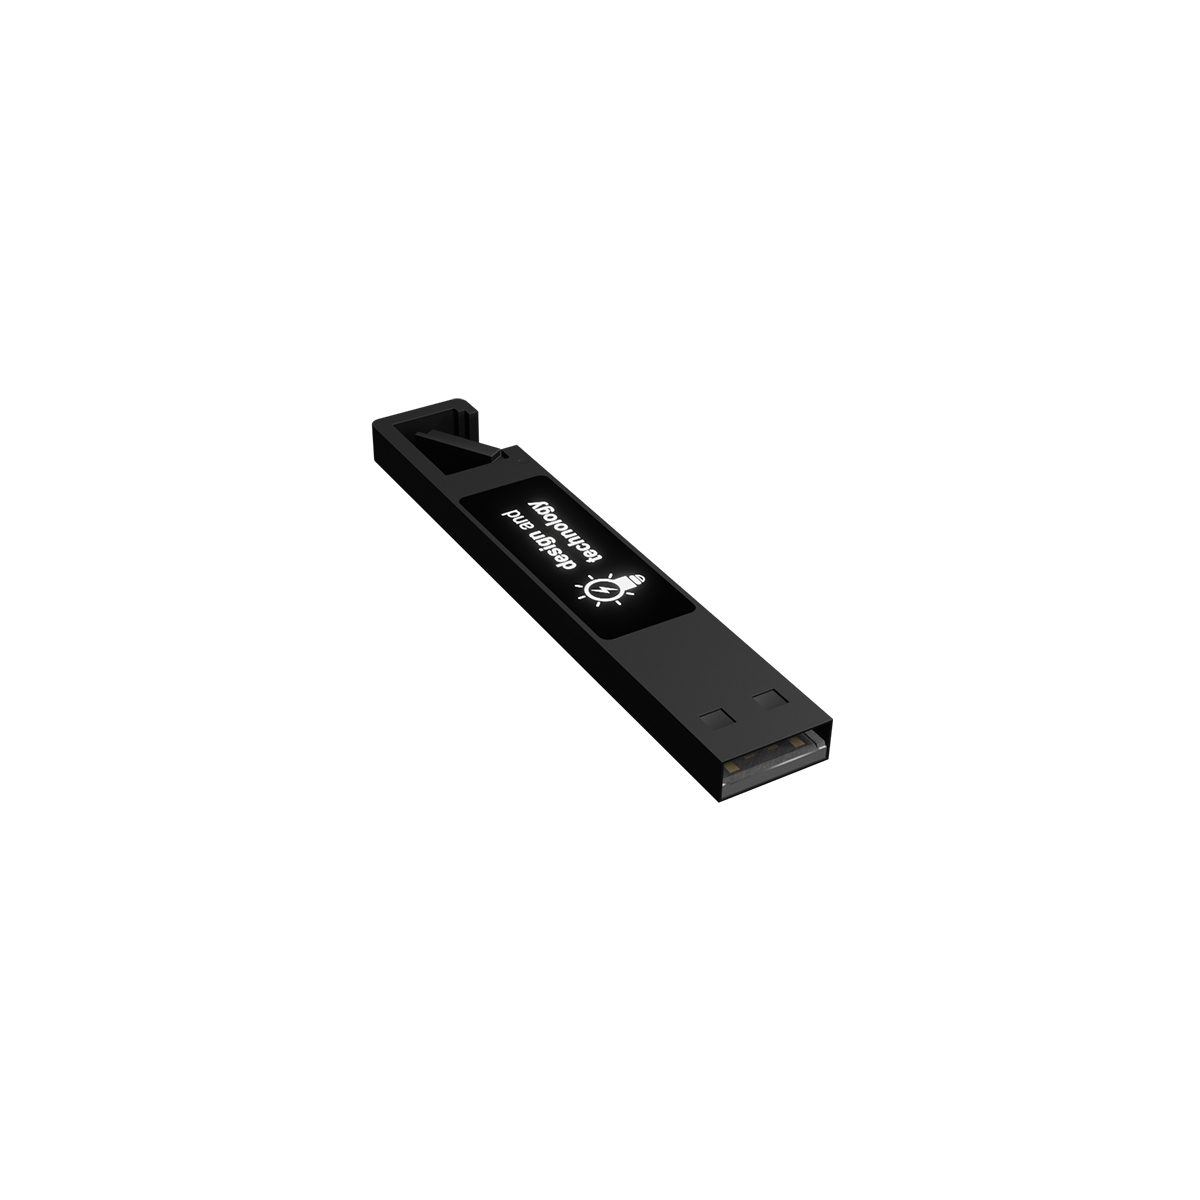 U30 - LED USB flashdisk with hook